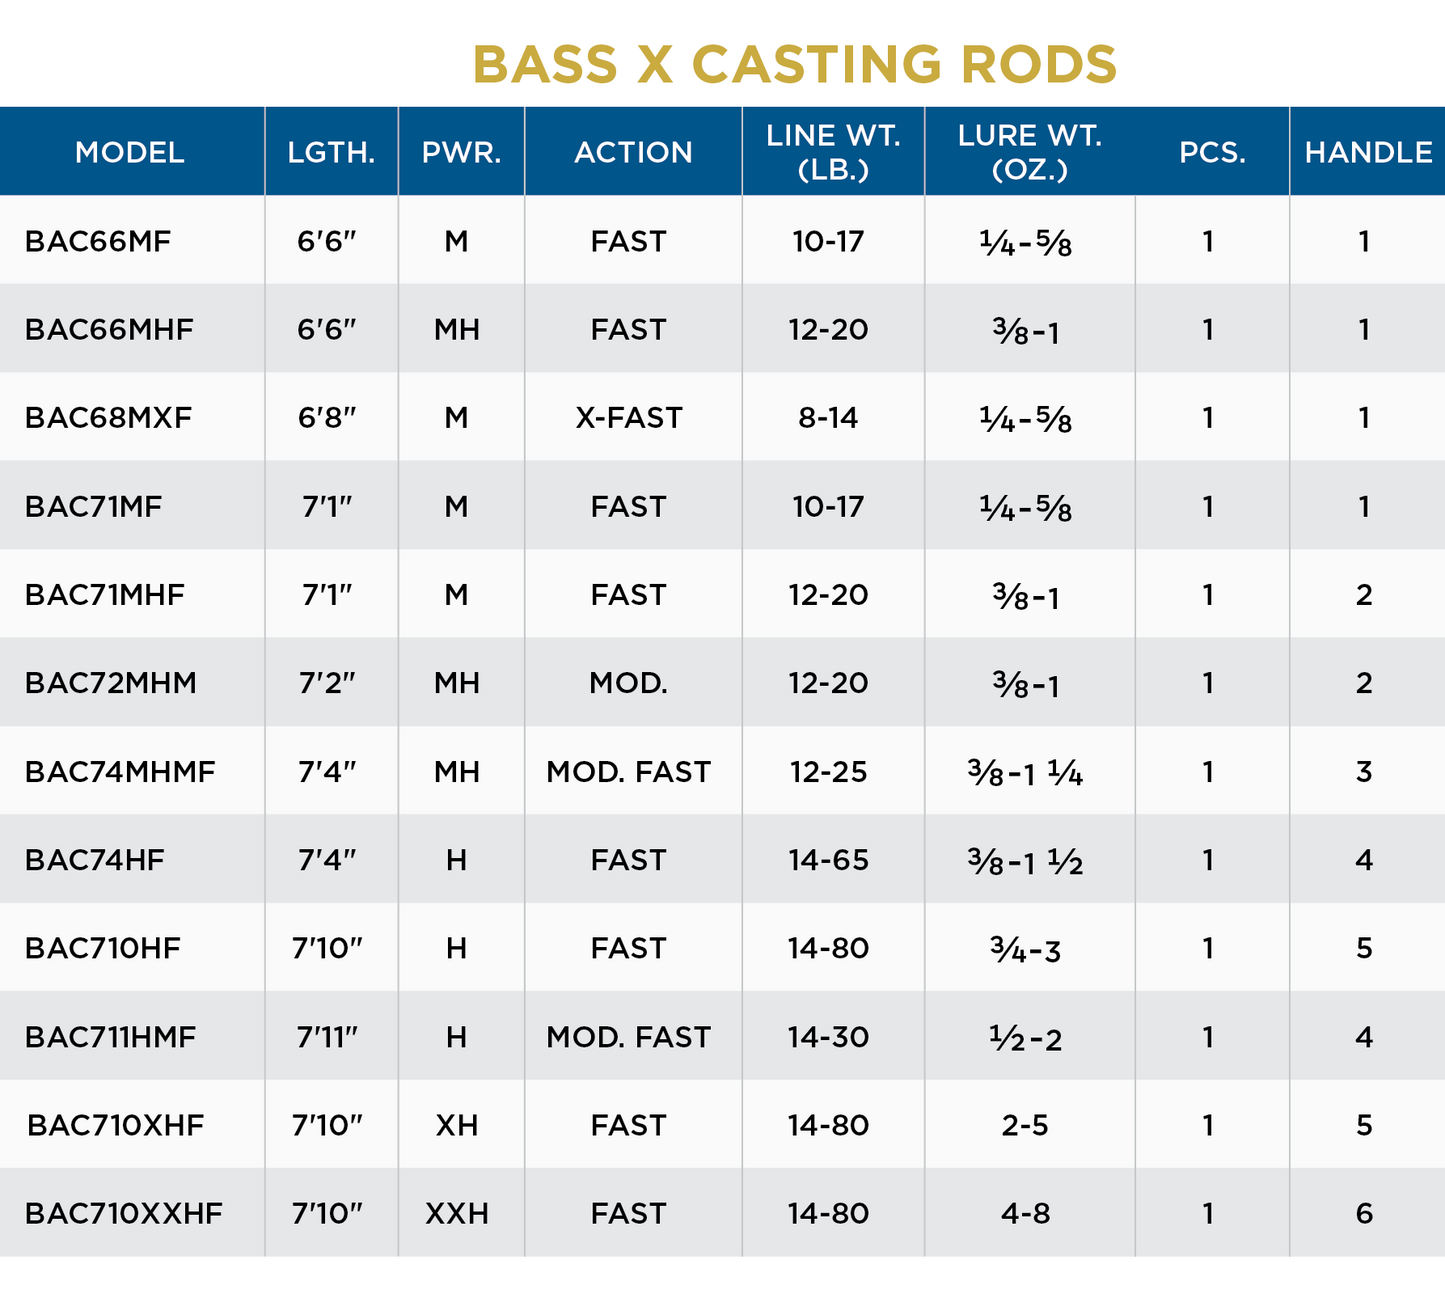 St. Croix Bass X Casting Rods